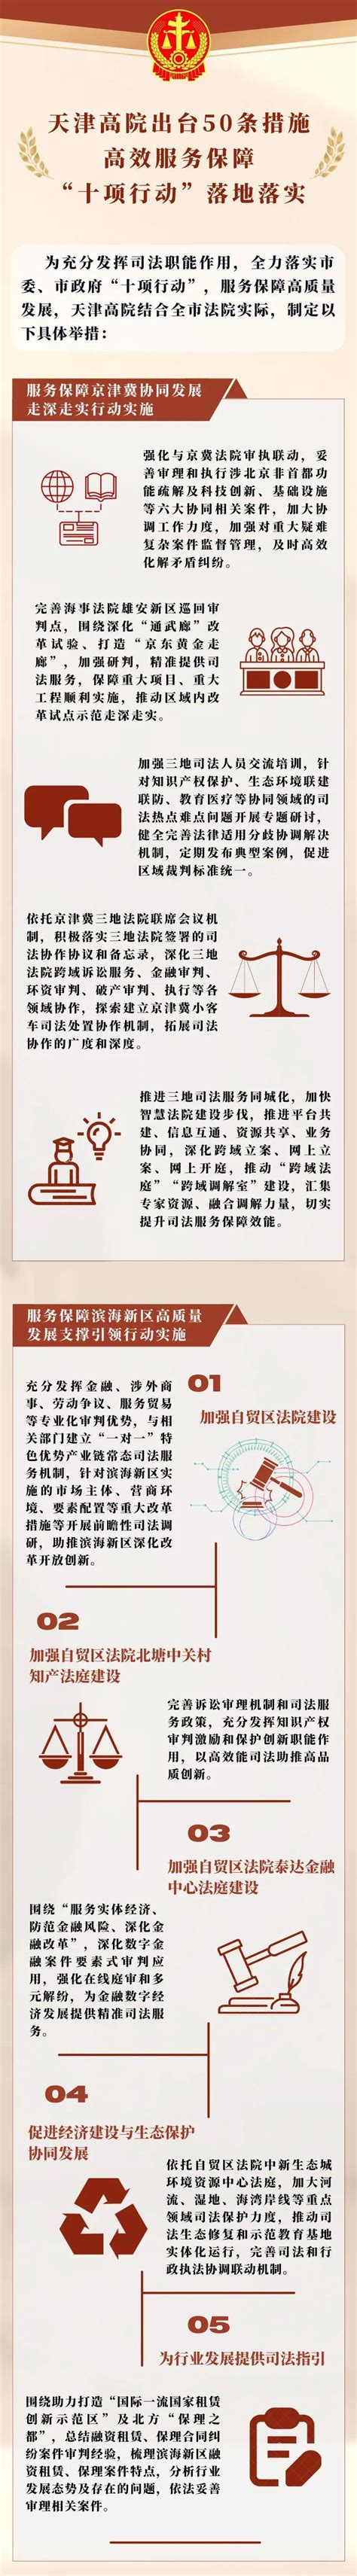 【贯彻落实“十项行动”】一图读懂天津法院落实“十项行动”50条具体措施-天津市河西区人民法院